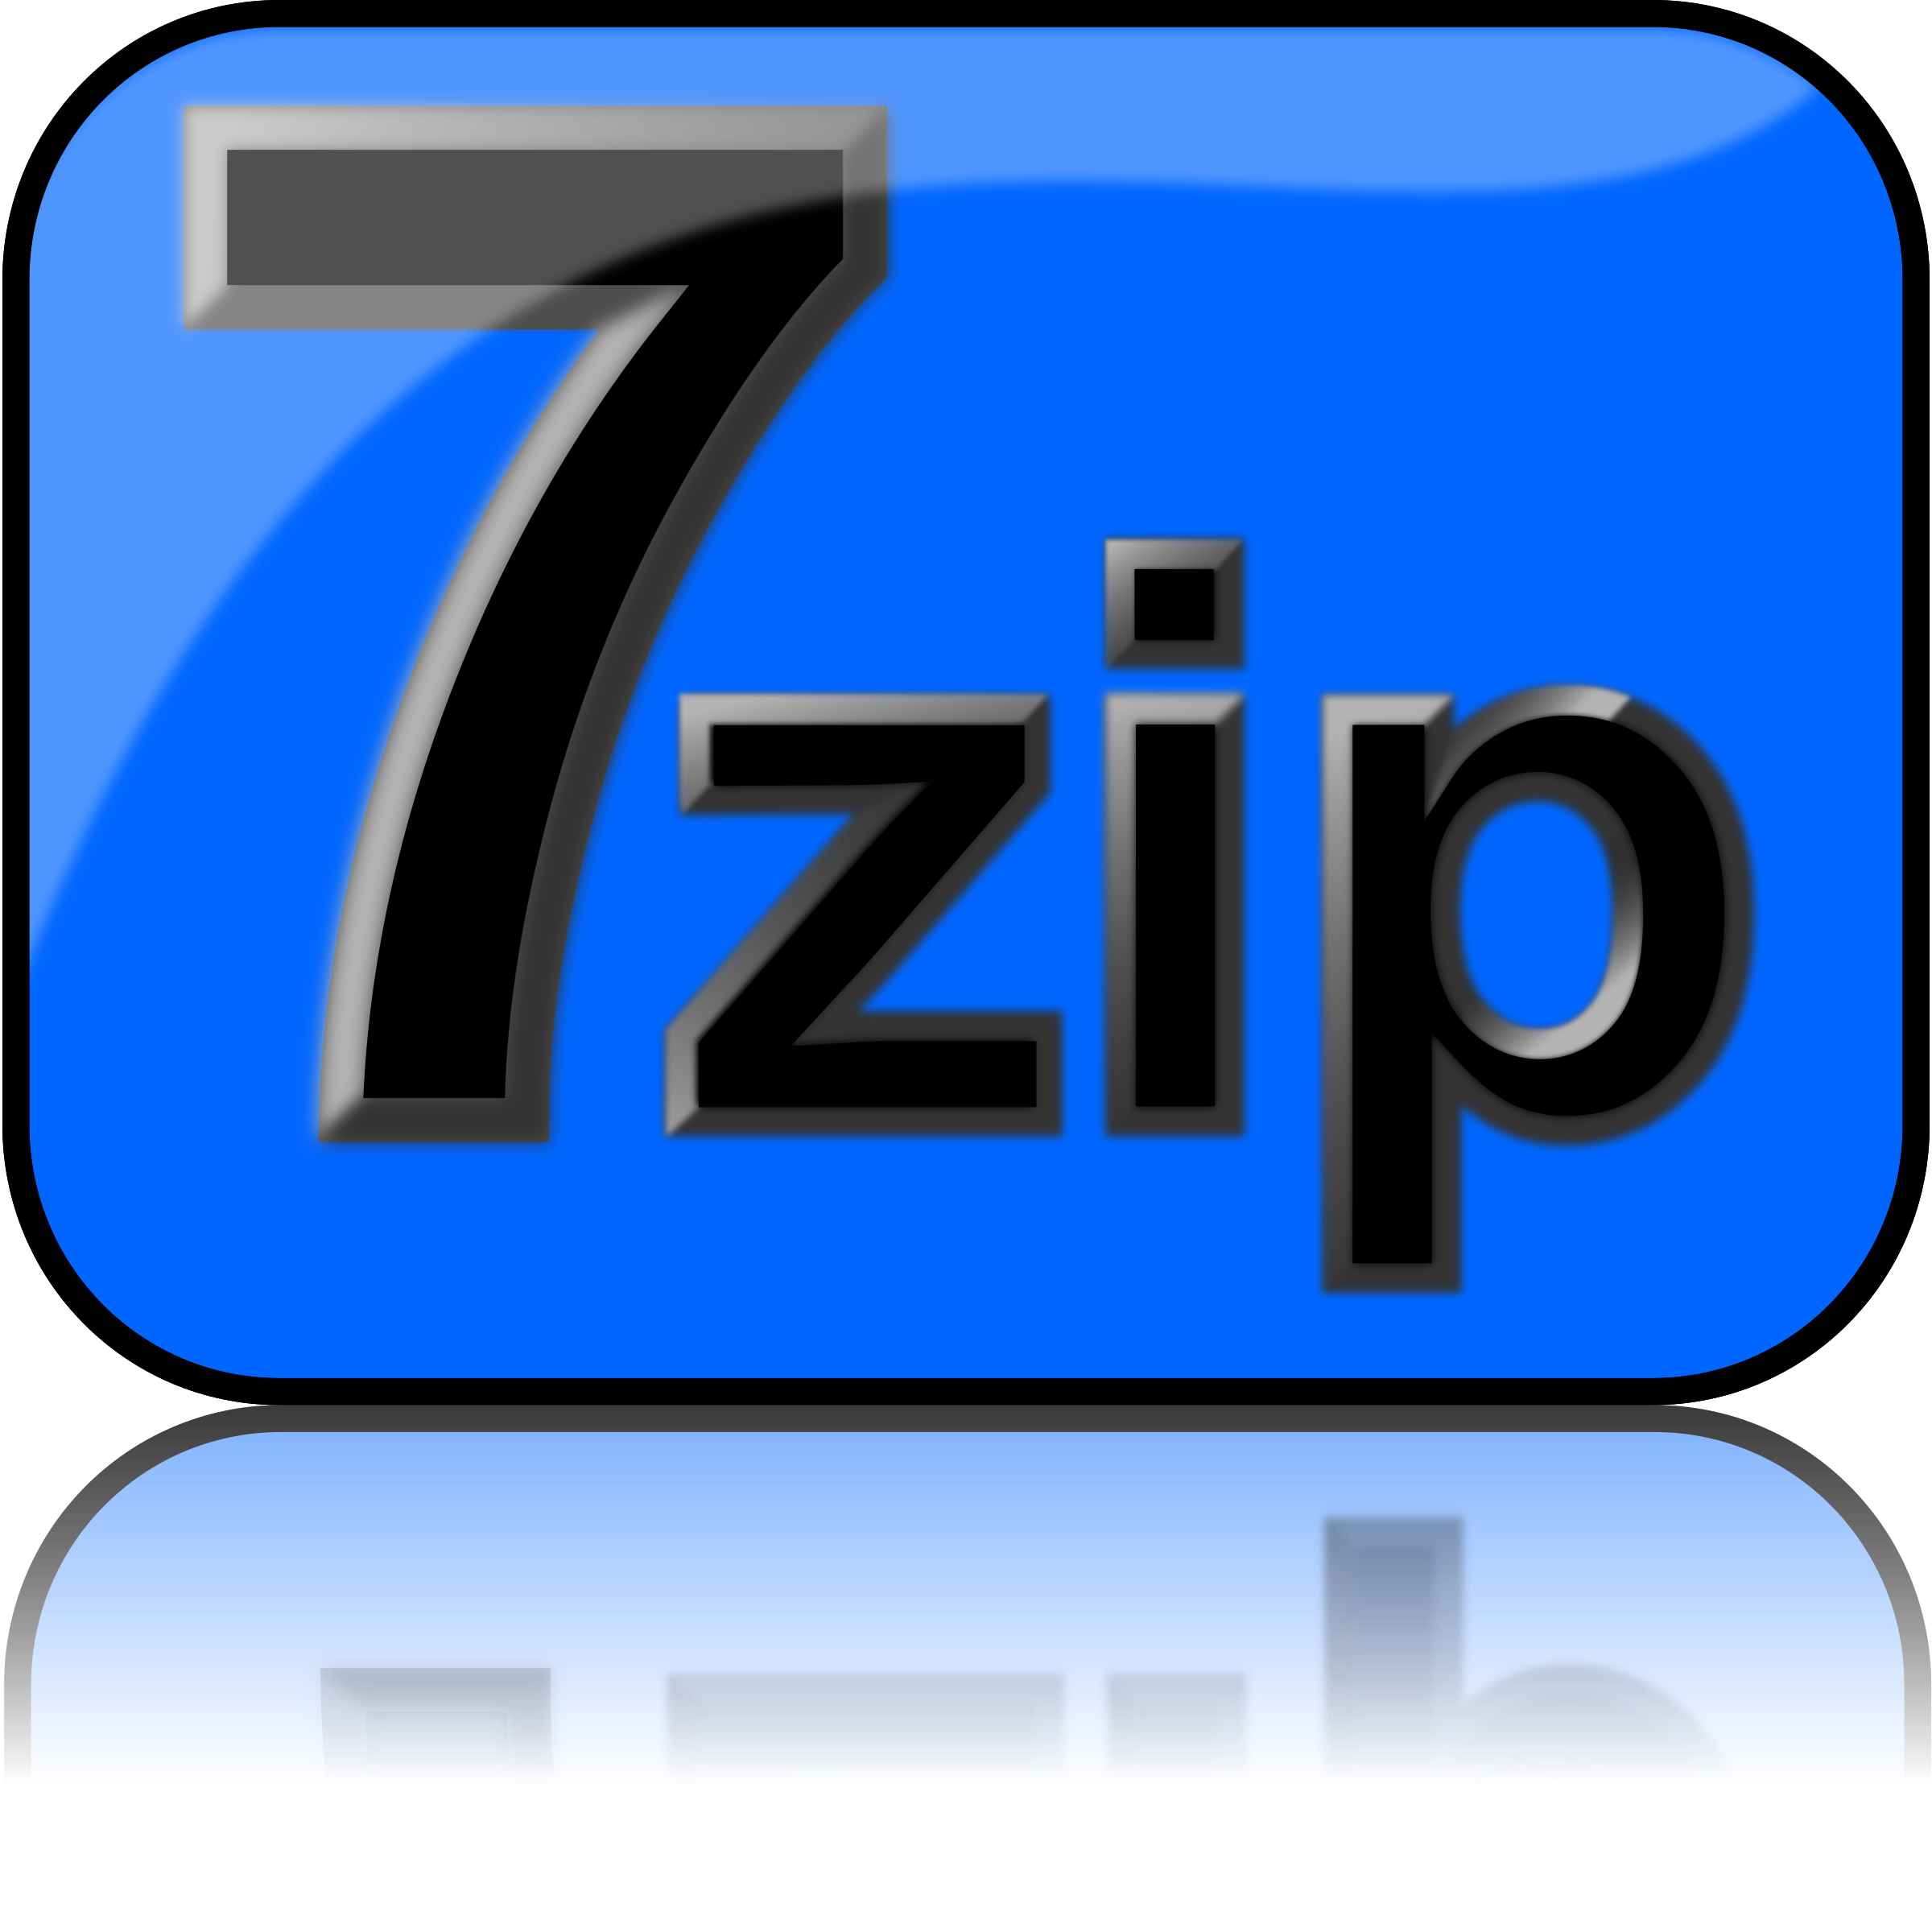 windows 7 icons download zip